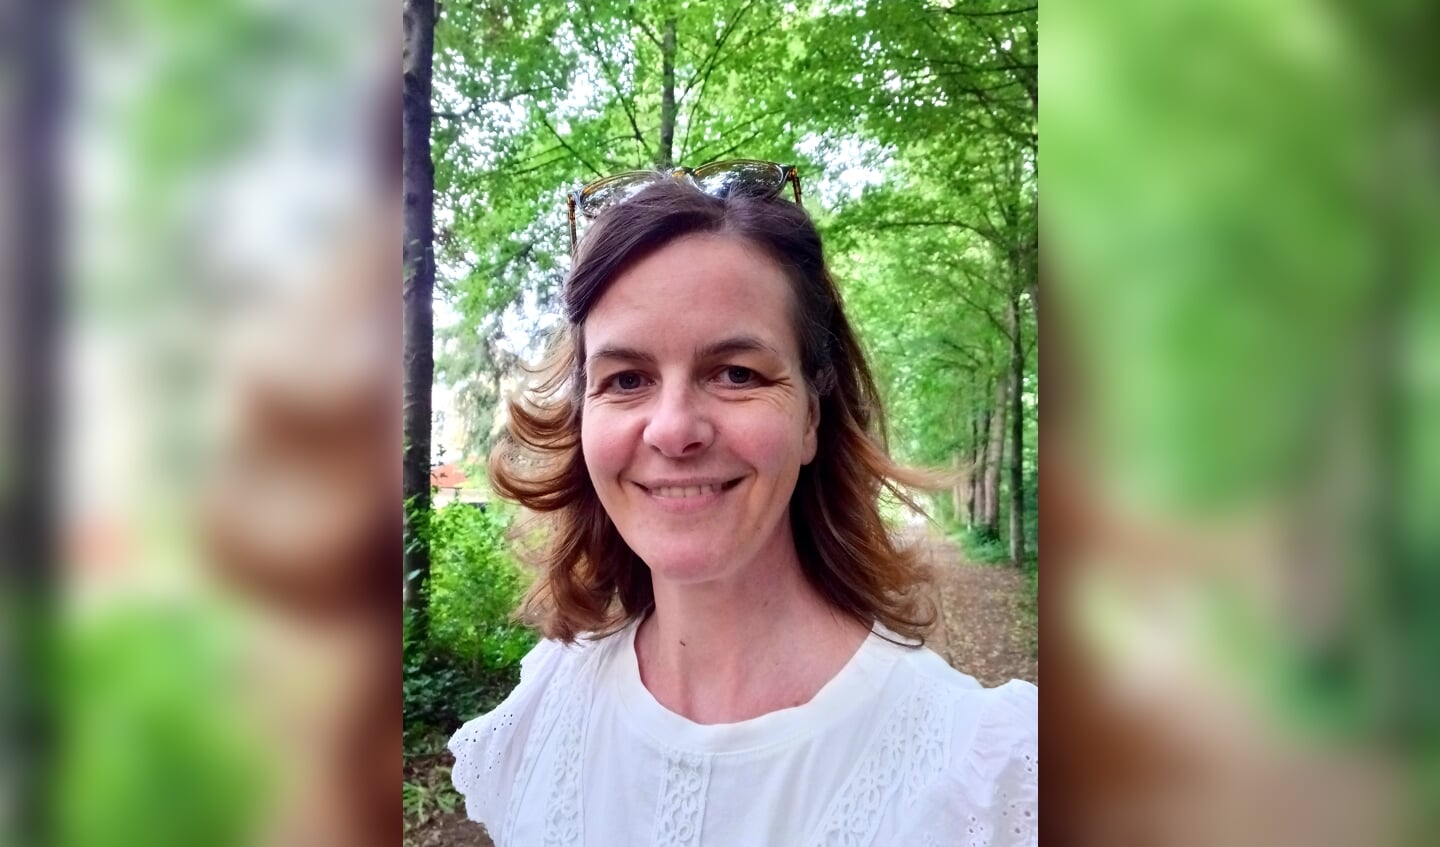 Anne-Marije Potter (42) wil anderen inspireren op het gebied van duurzaamheid.